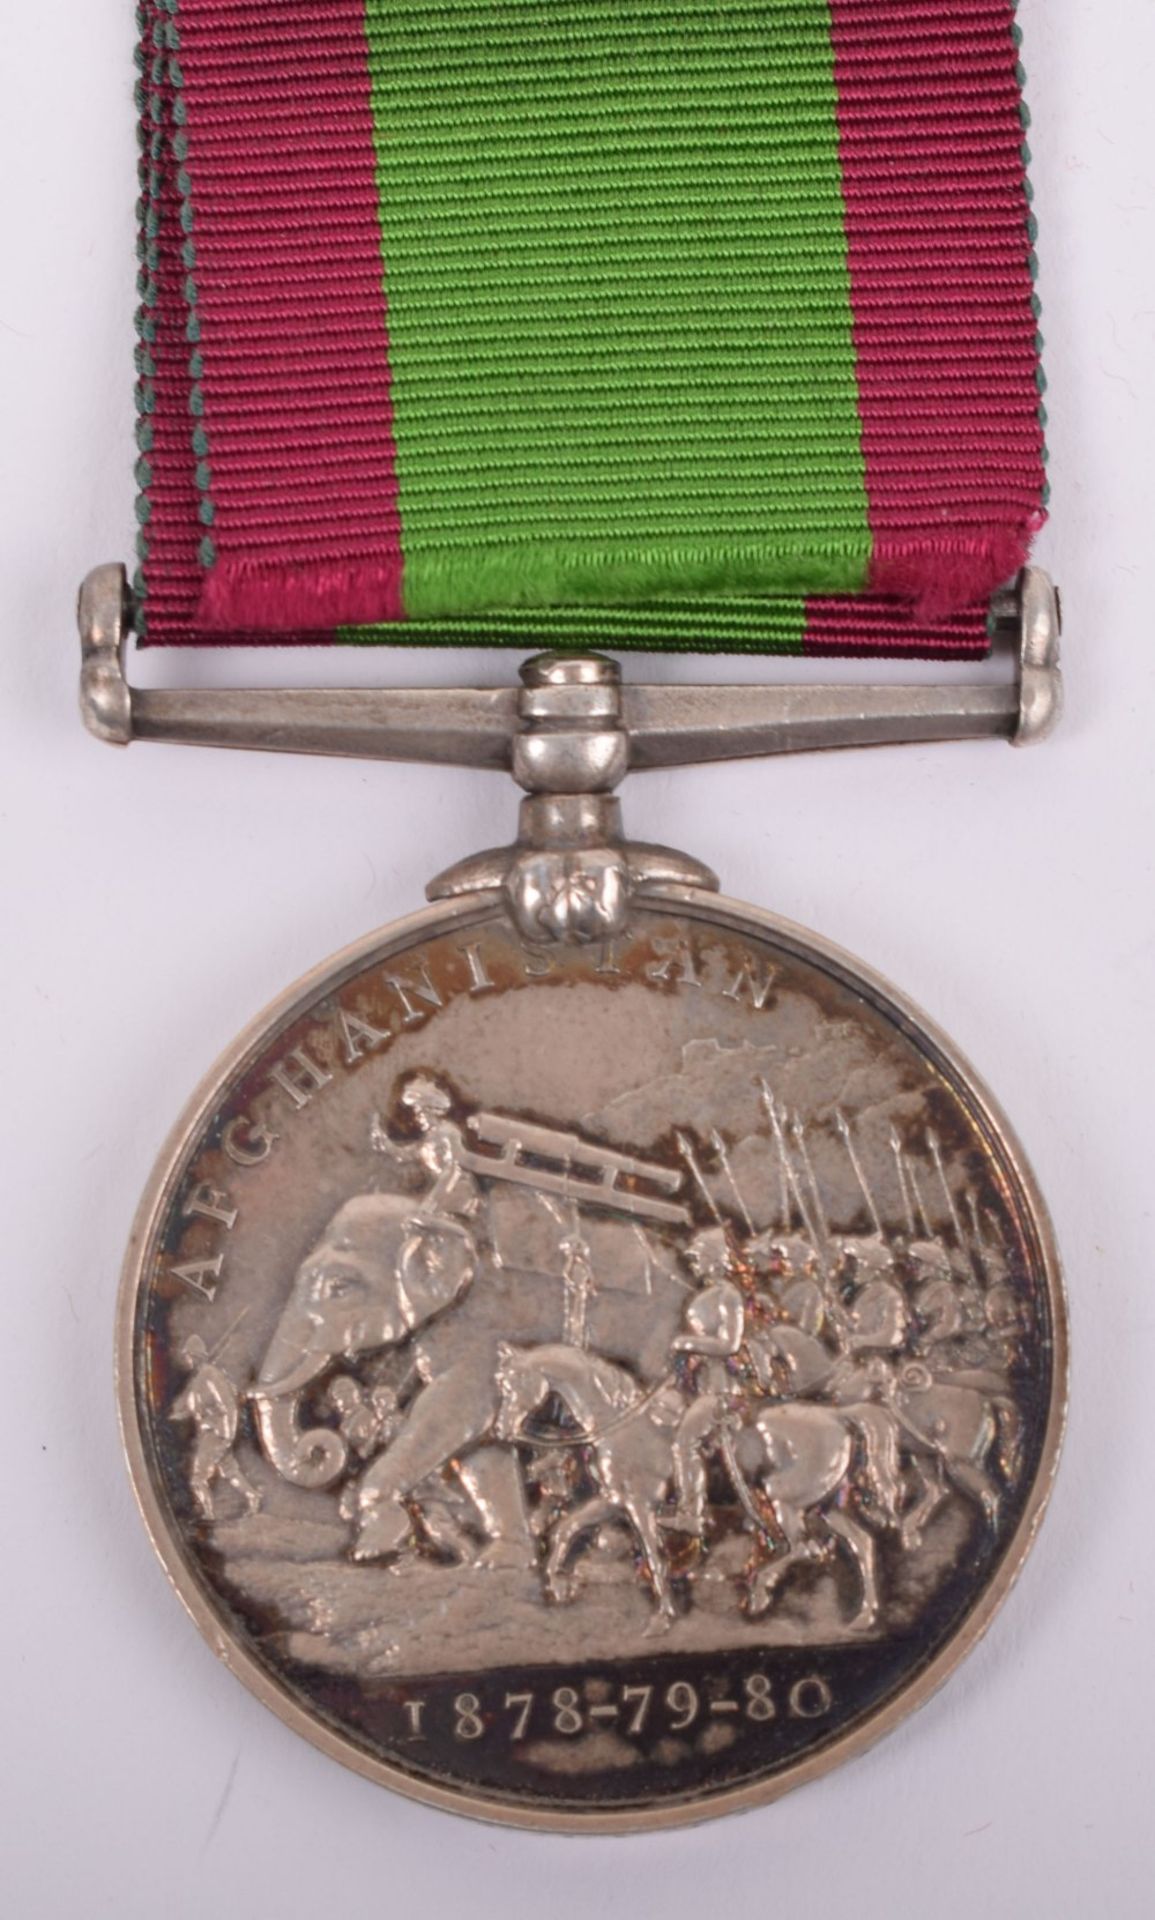 Afghanistan 1878-80 Medal Royal Artillery - Image 5 of 6